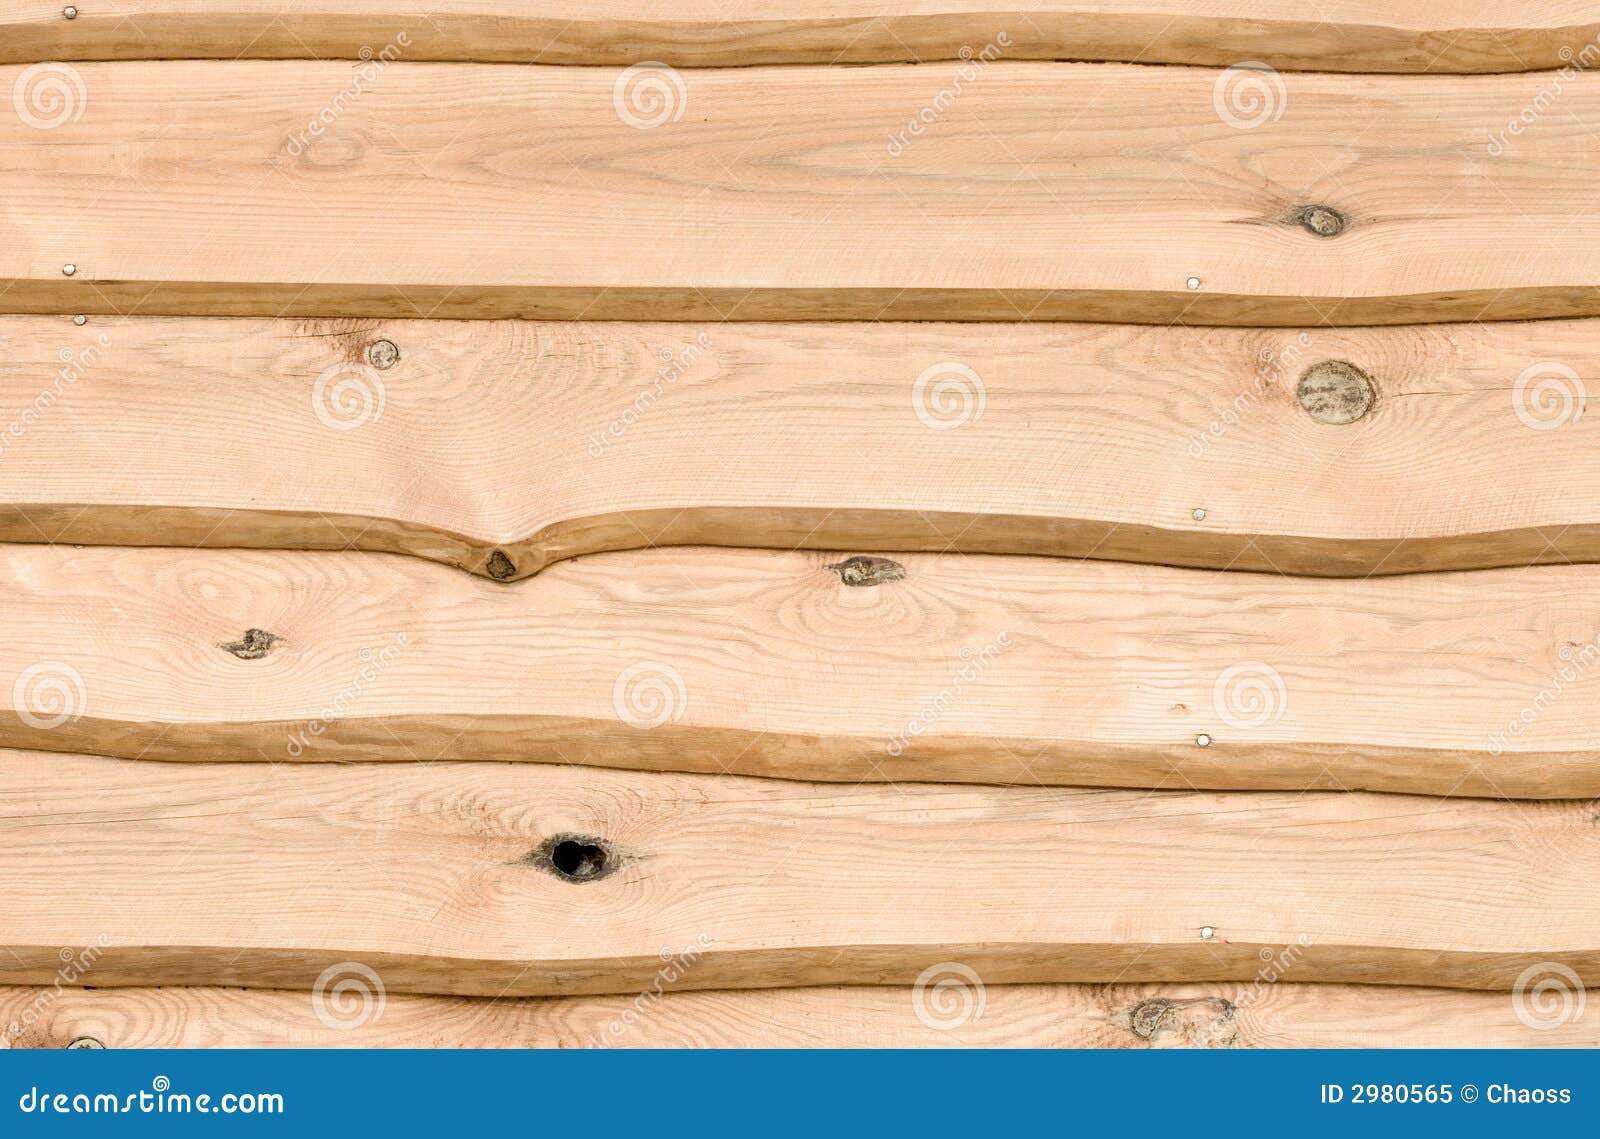 wijsvinger rechtdoor snap Ruwe houten planken stock afbeelding. Image of bruin, houten - 2980565